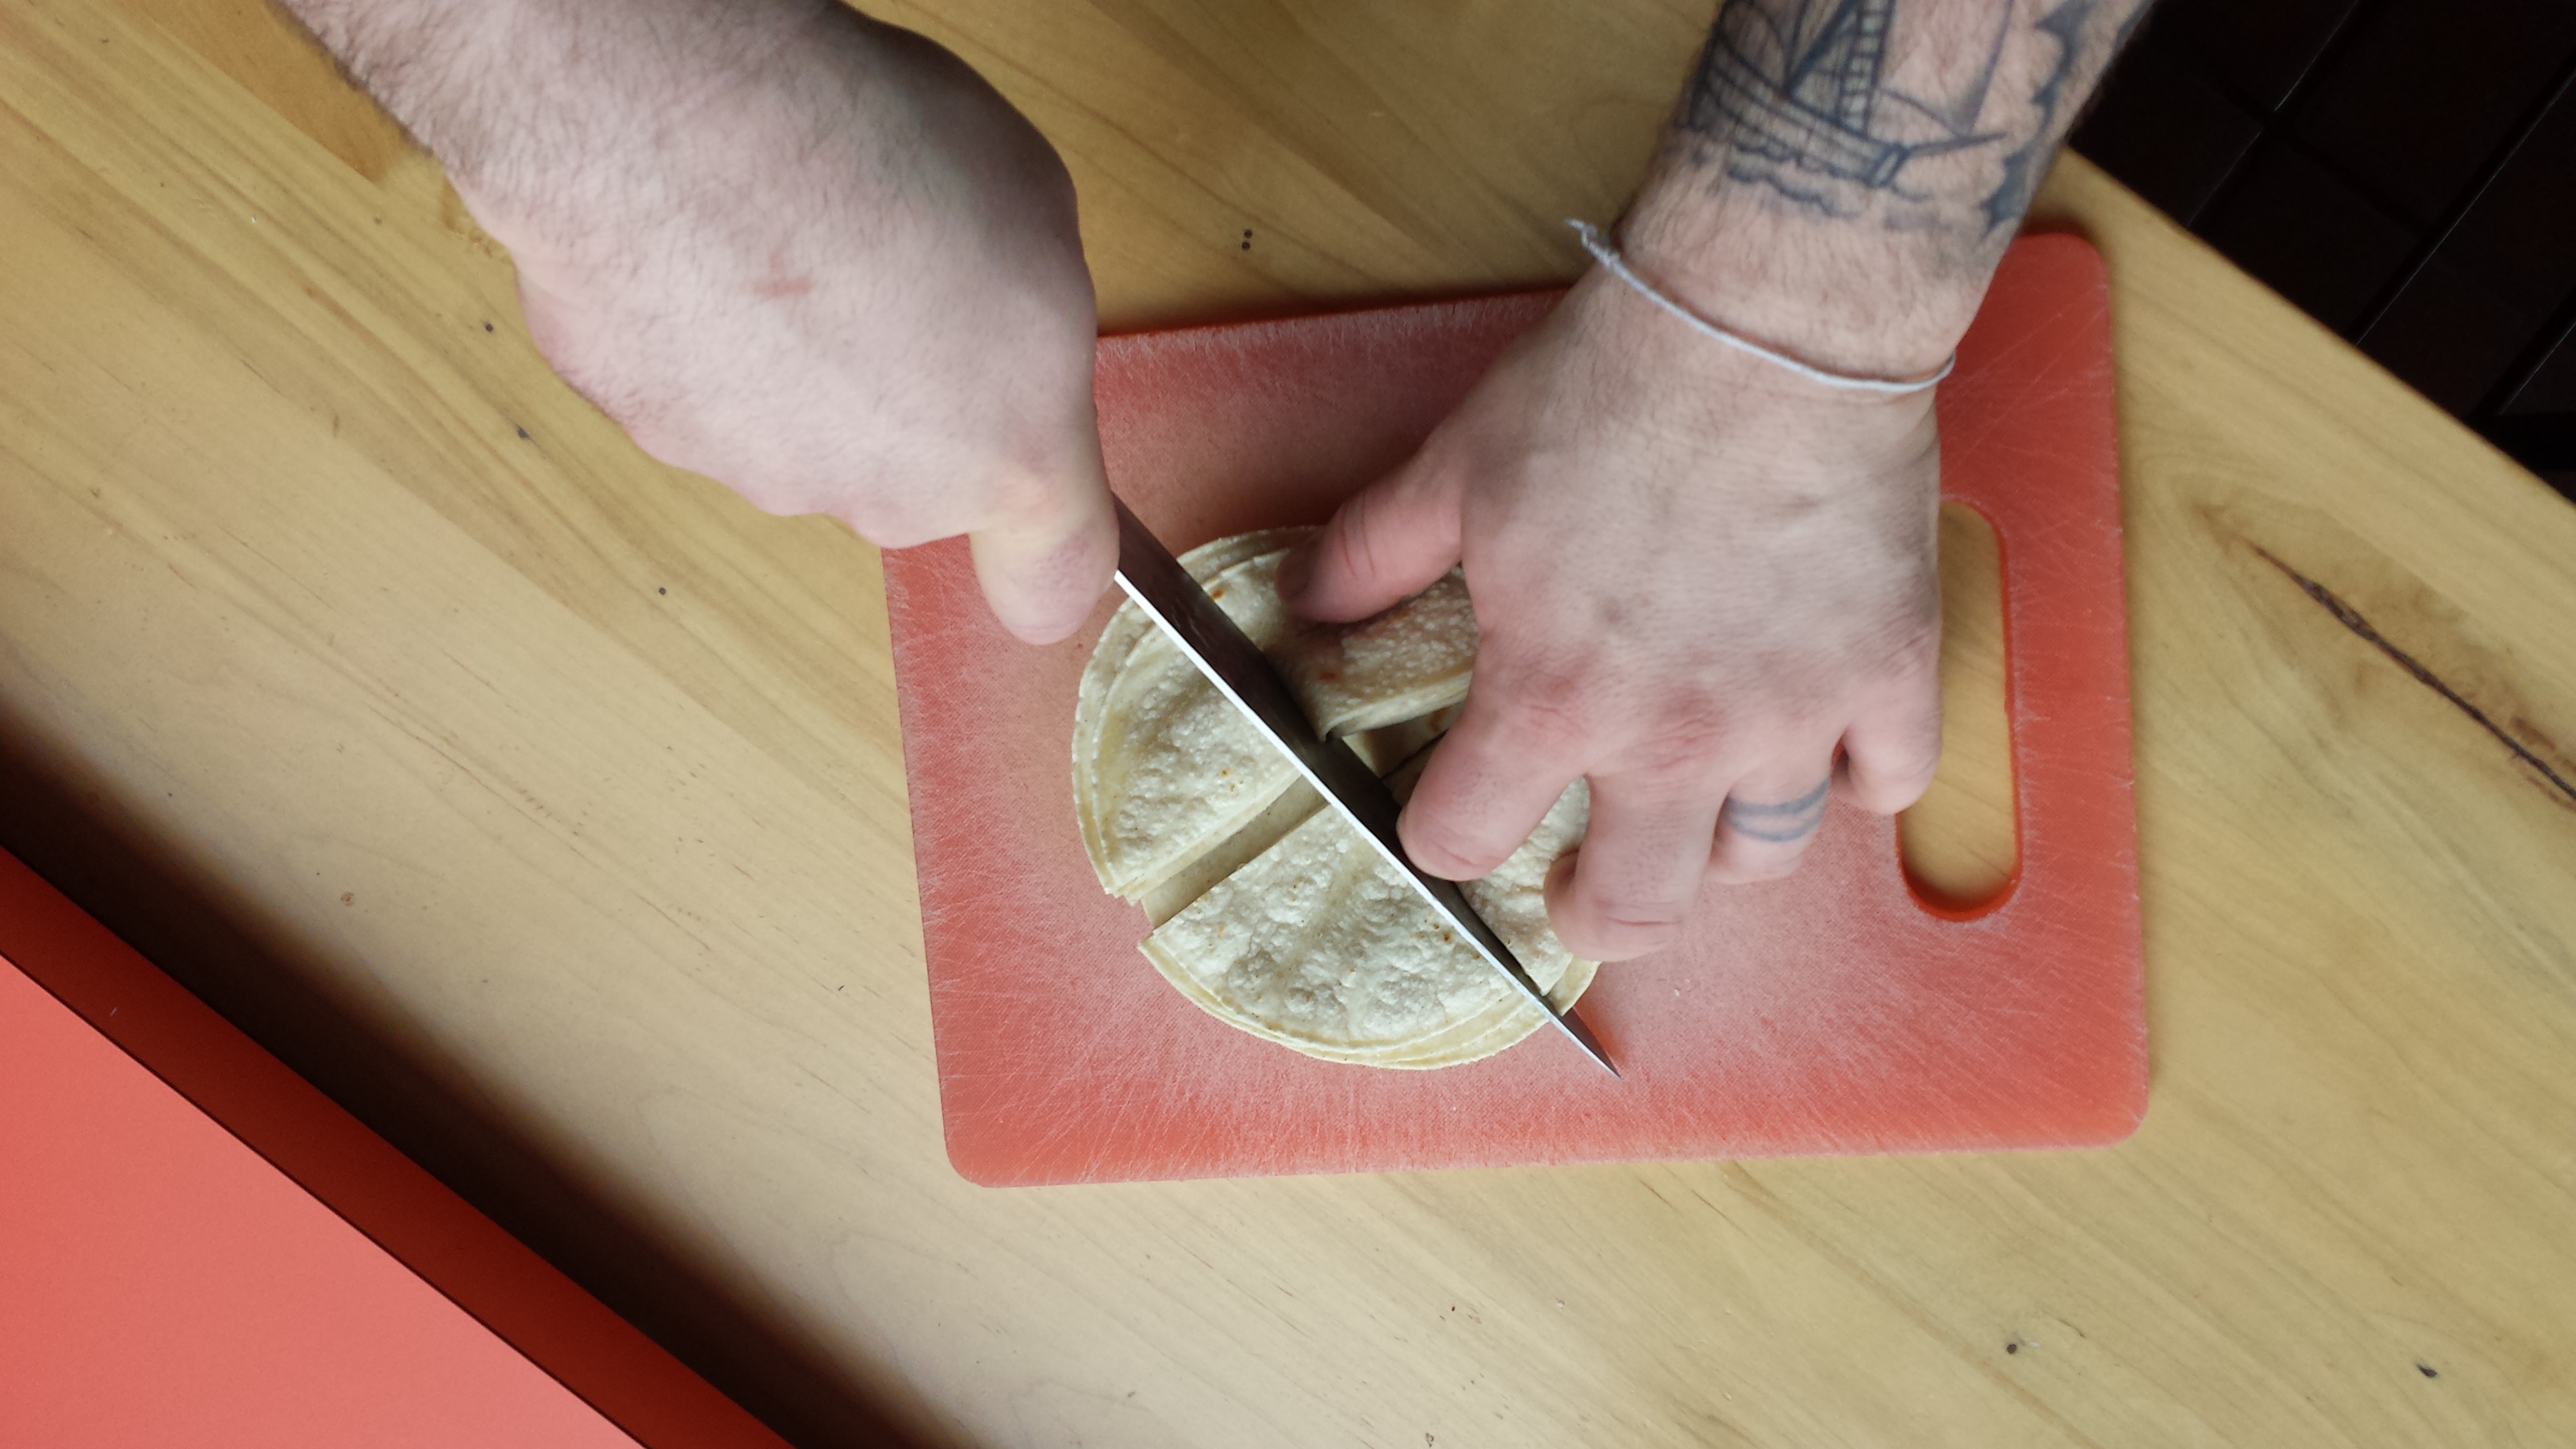 Nick slicing tortillas